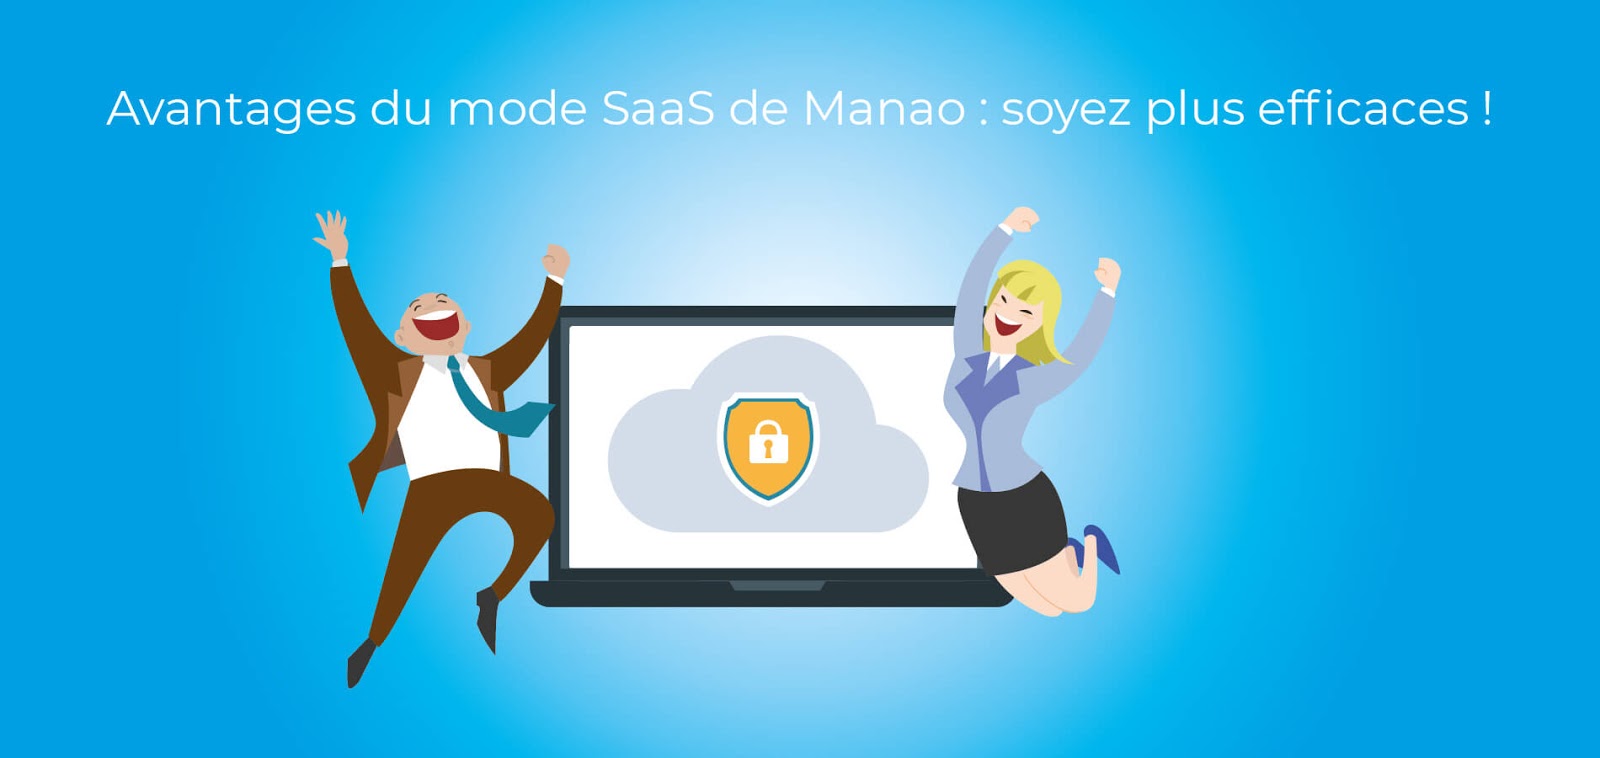 Image illustrant les avantages du mode SaaS (Software as a Service) de Manao, notamment l'accessibilité en ligne, la facilité de mise à jour, et la flexibilité pour les utilisateurs.